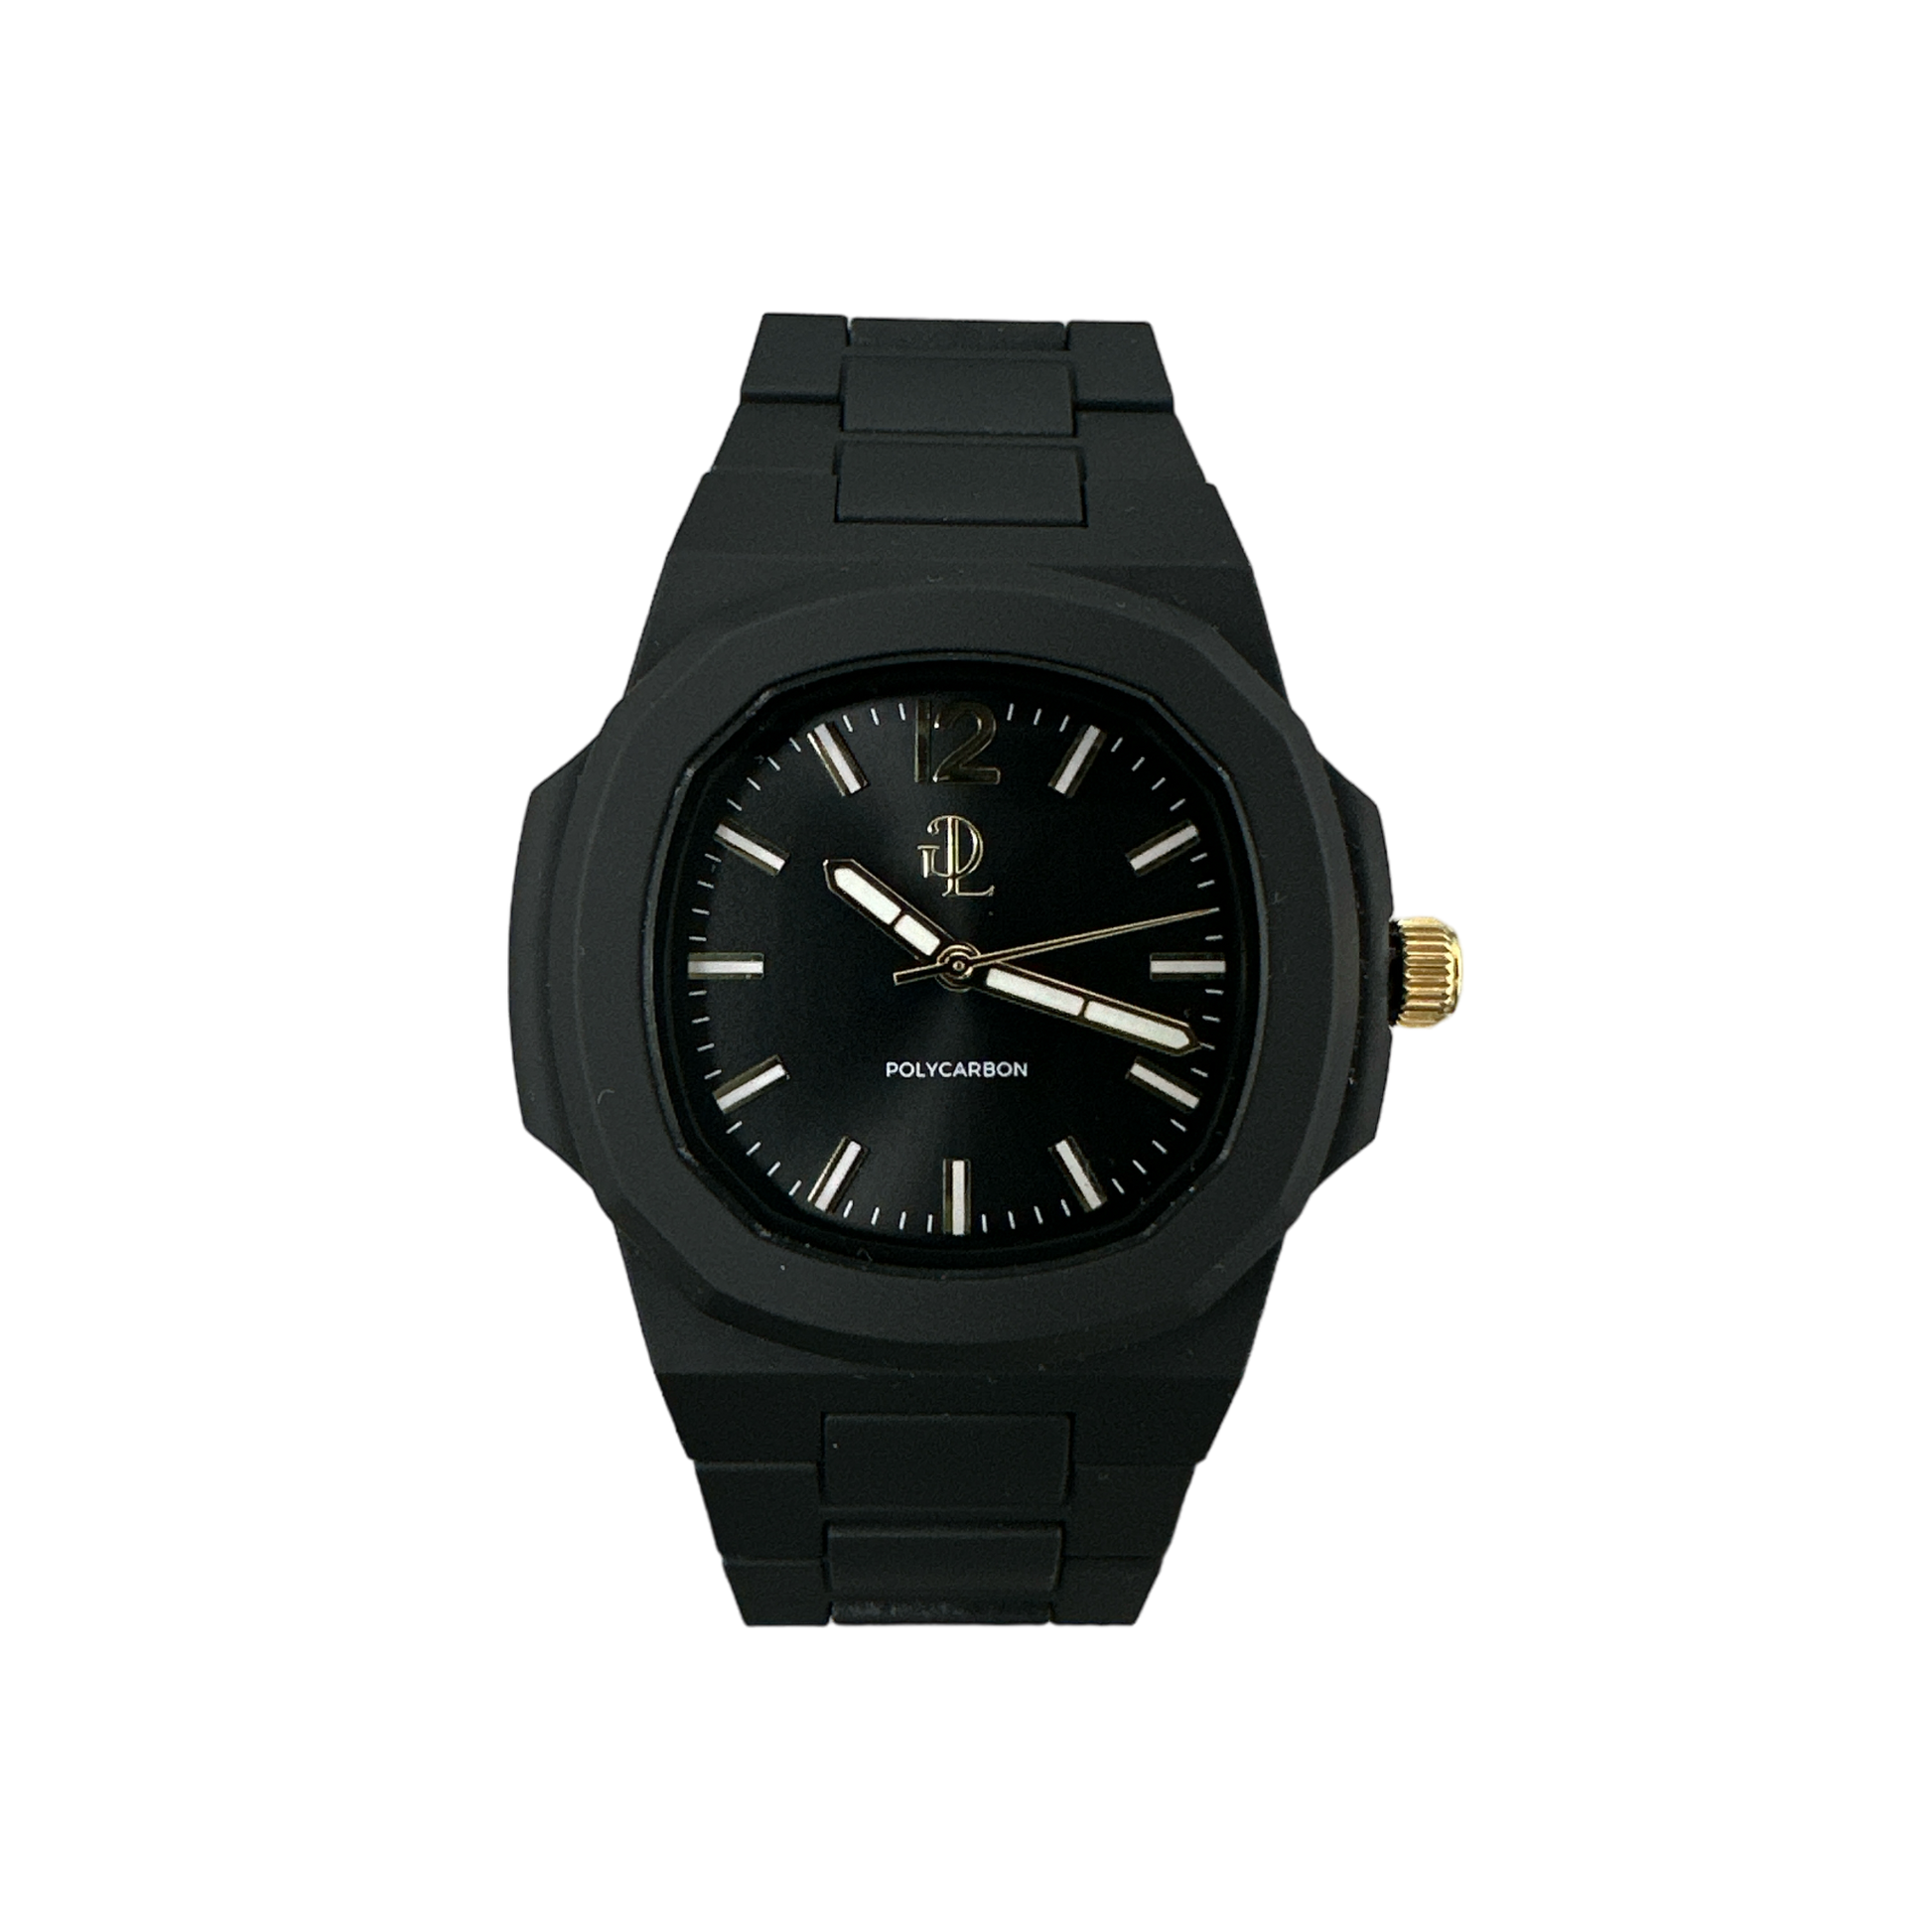 Lasciati affascinare dalla sofisticata eleganza del nostro orologio GDL con quadrante in policarbonato nero. Con il suo design esclusivo, questo orologio emana un fascino senza tempo e si adatta perfettamente ad ogni occasione. Fatti notare per il tuo stile raffinato con il GDL Watch.